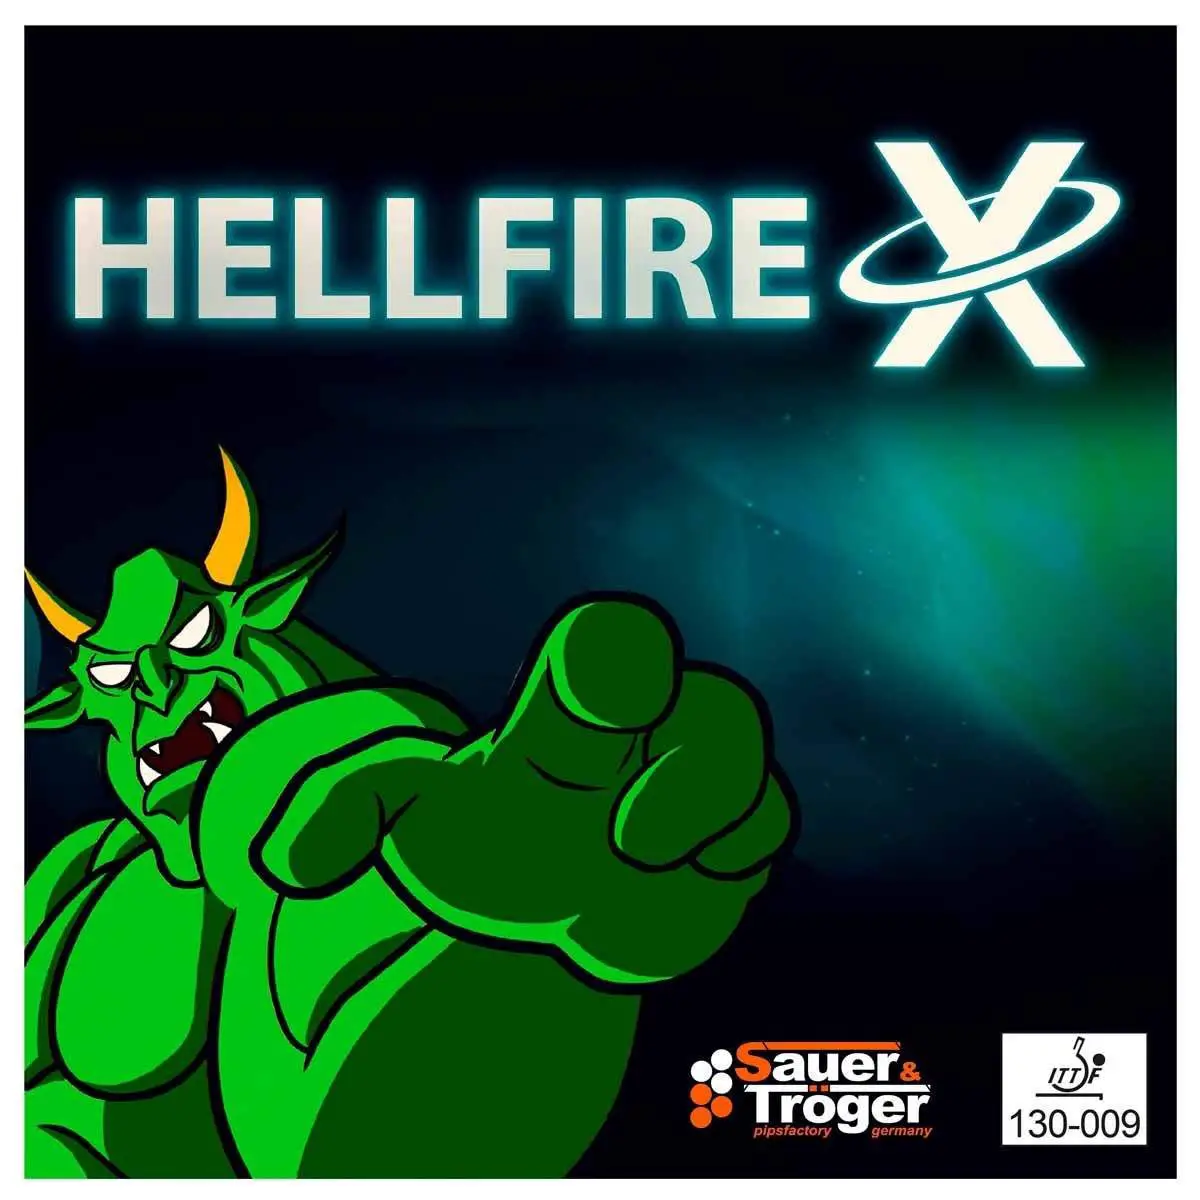 Sauer & Troger Hellfire X